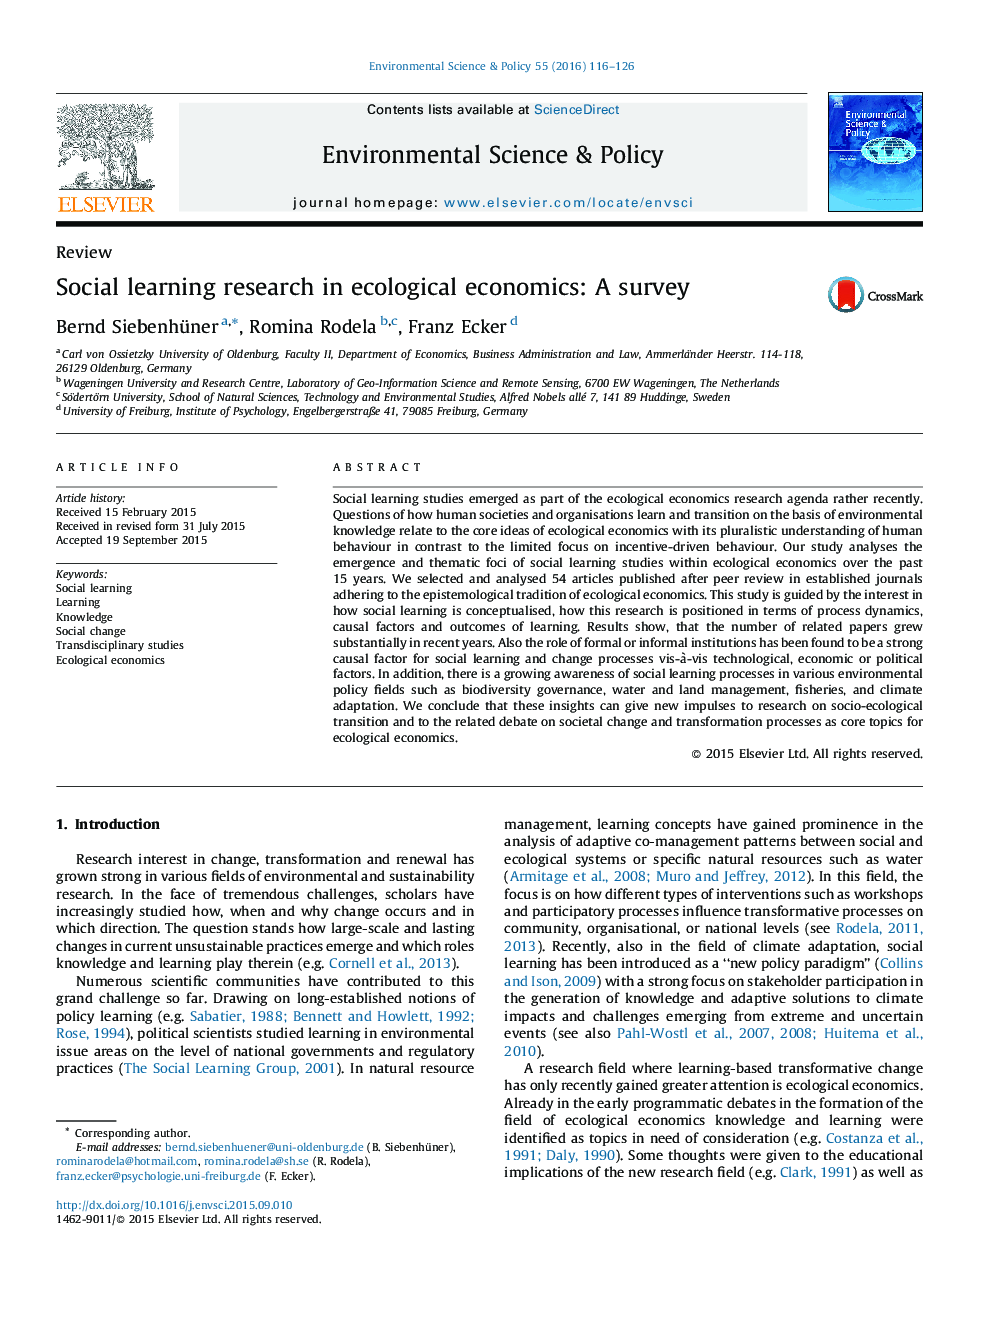 تحقیقات یادگیری اجتماعی در اقتصاد زیست محیطی: یک نظرسنجی 